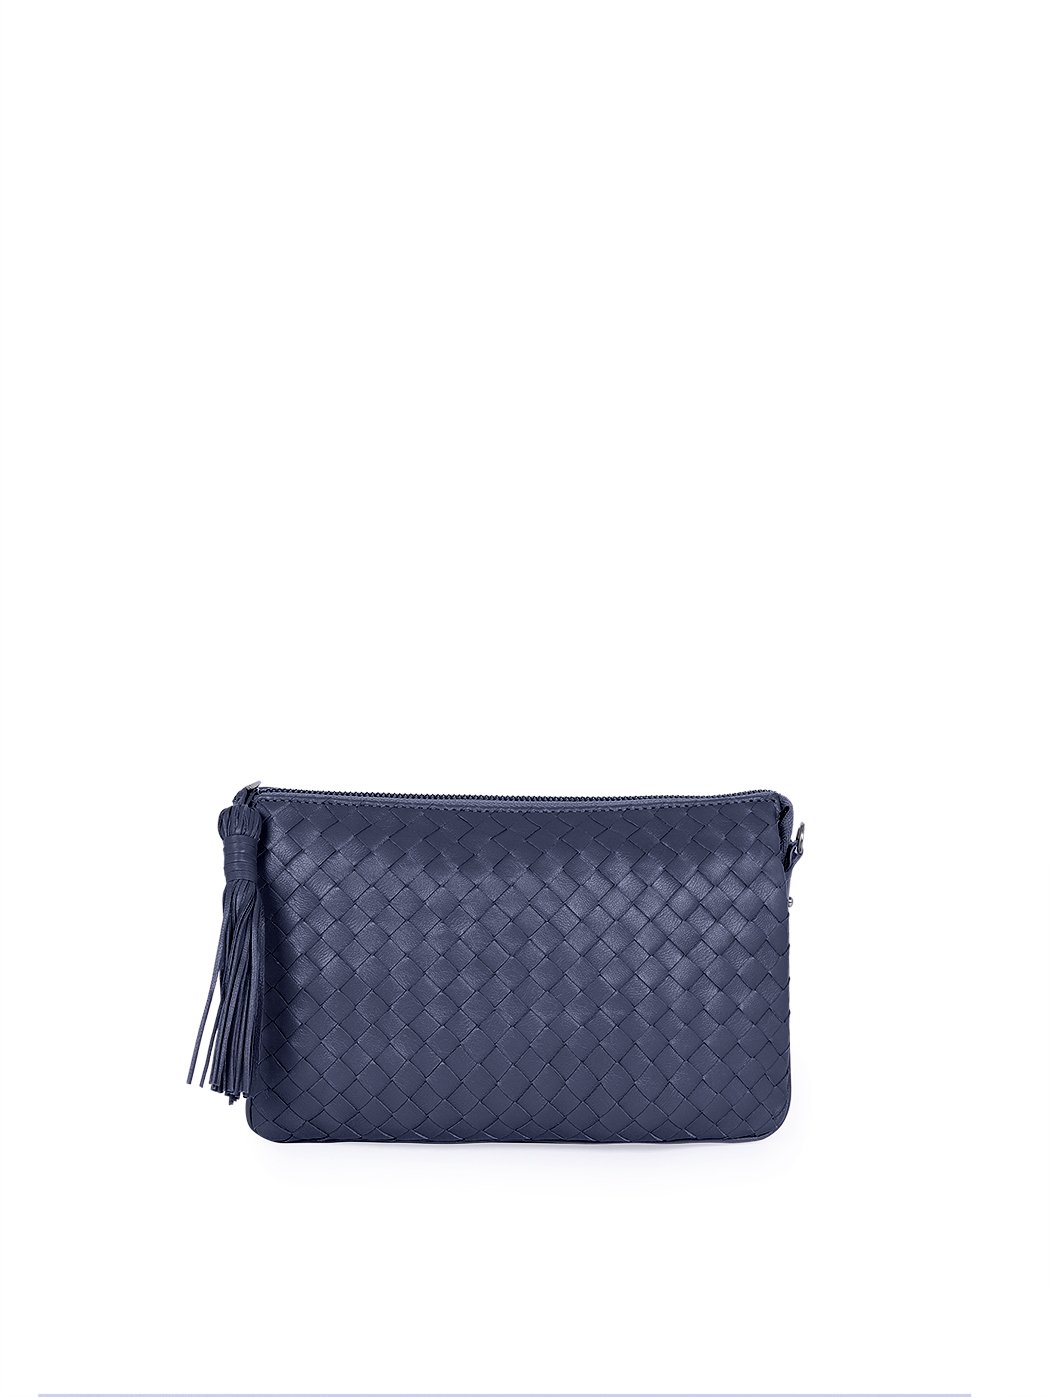 Плетеная сумка – клатч со съемным ремнем коллекции Intrecci синего цвета